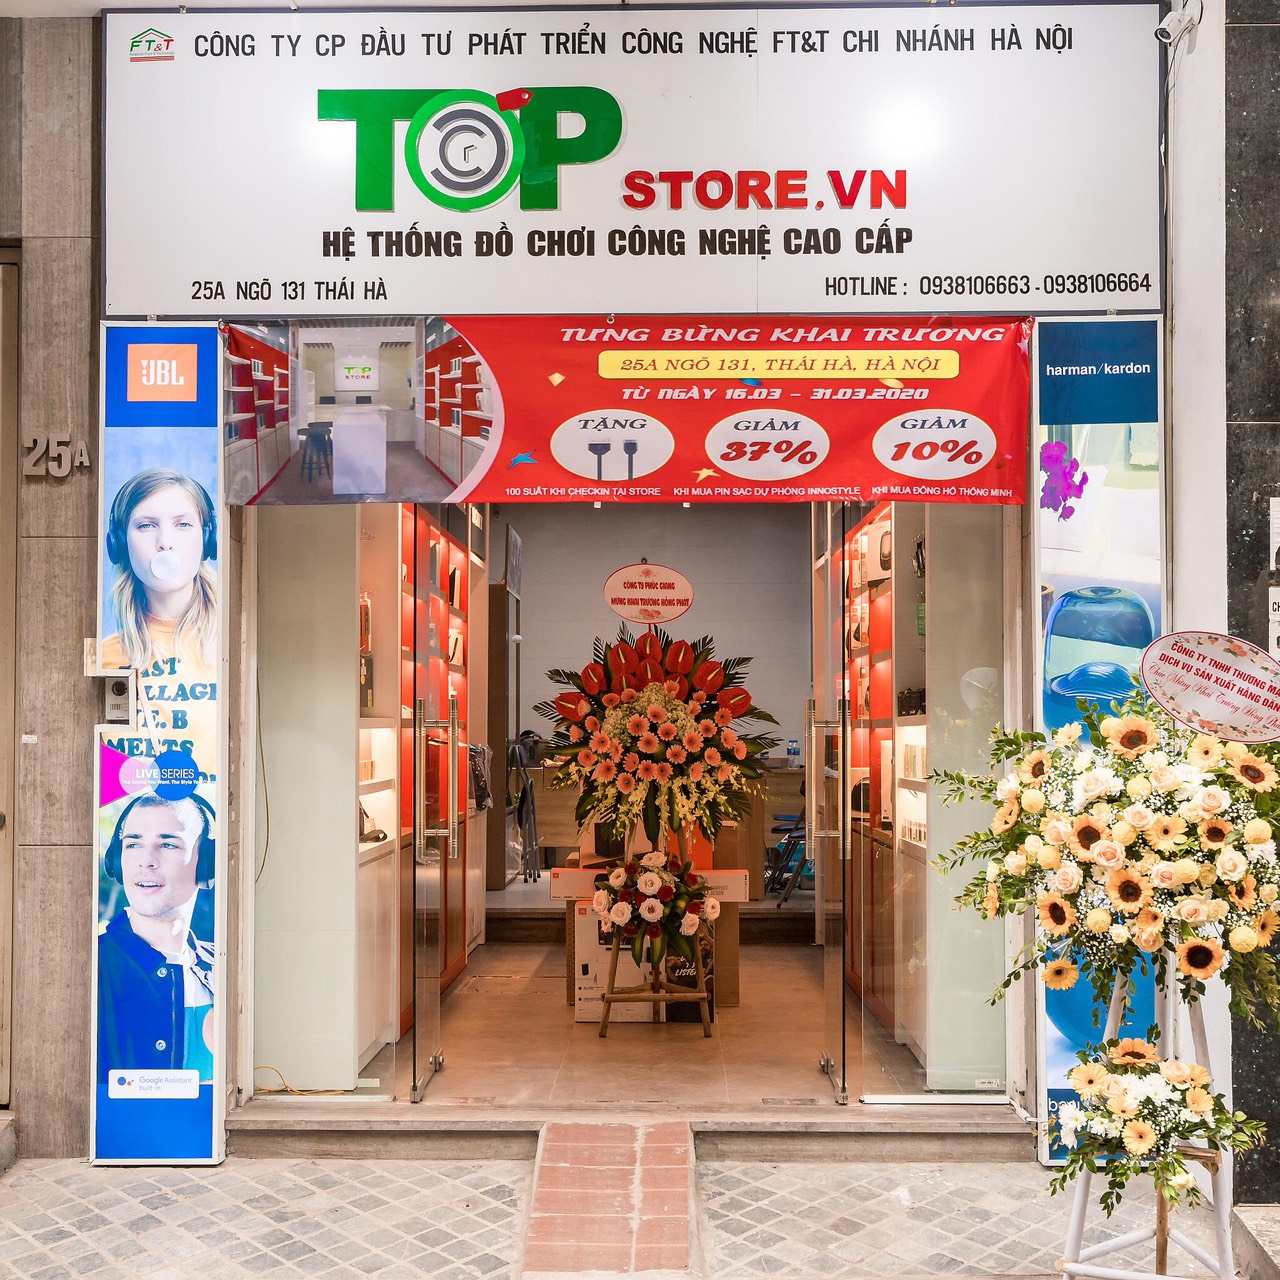 Siêu khuyến mãi upto 50% chào đón Topstore.vn chi nhánh mới tại Hà Nội